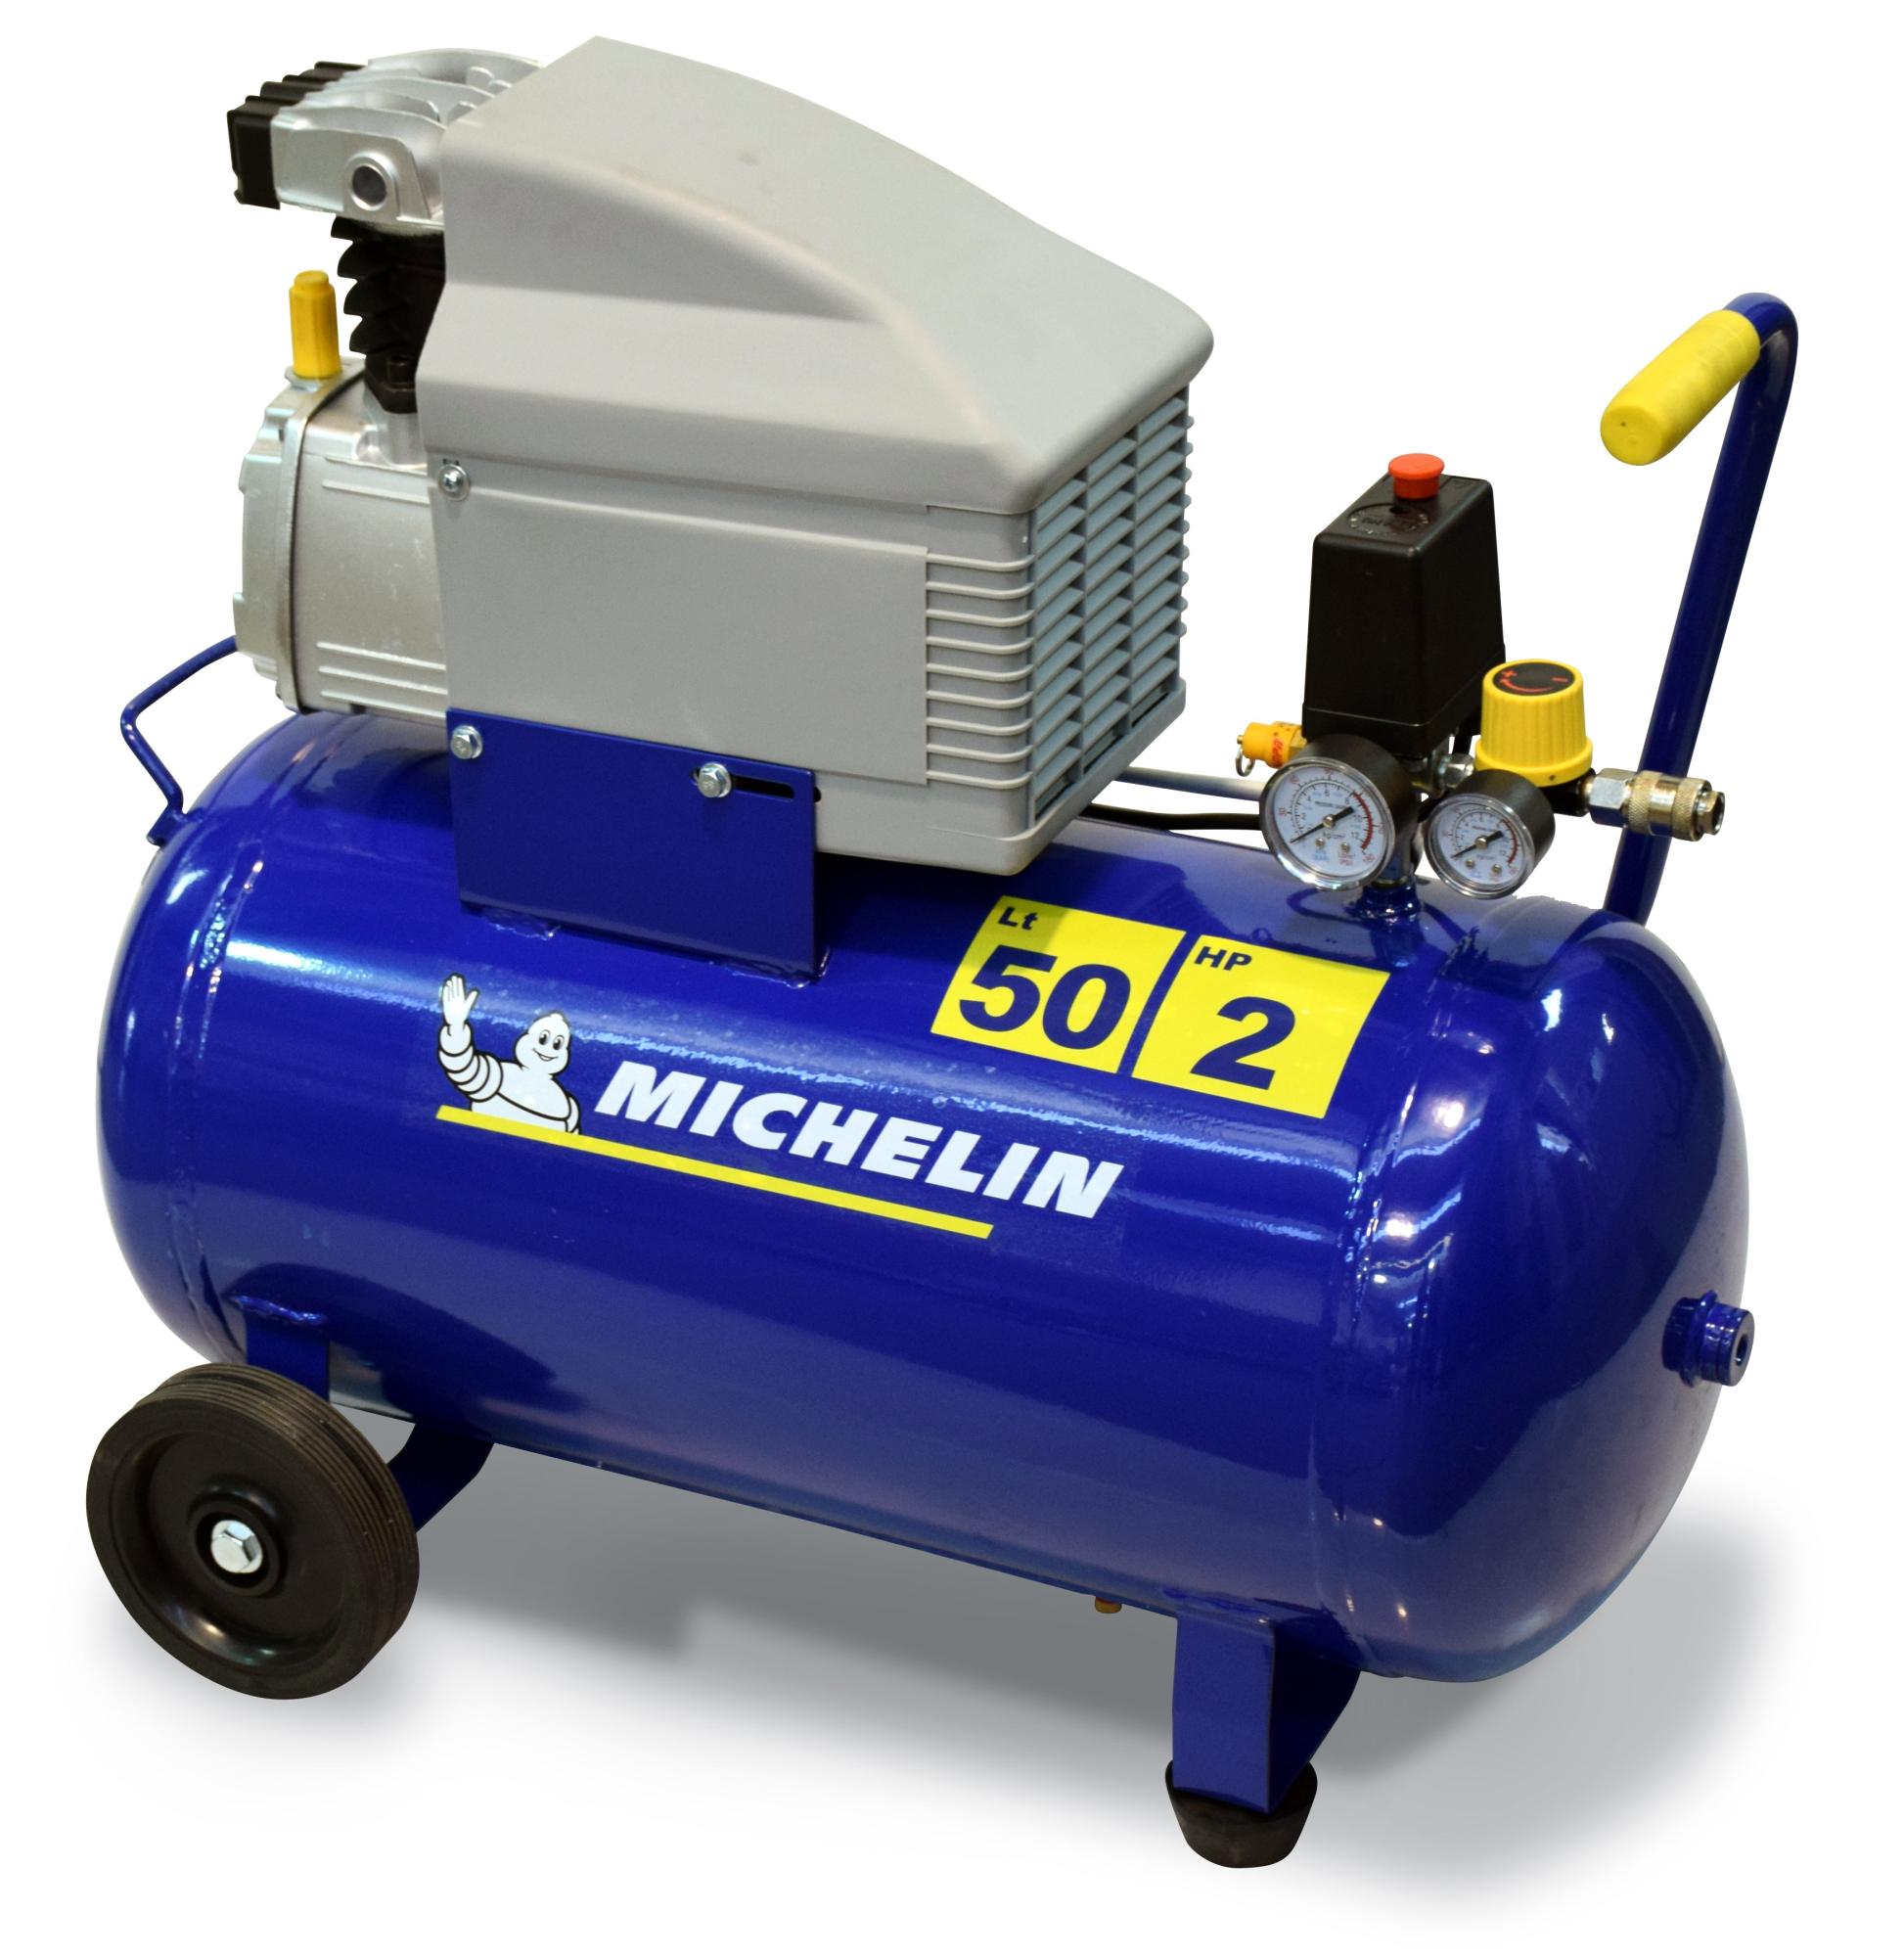 Compressore ad olio MICHELIN MB 5020, 2 hp, 8 bar, 50 litri